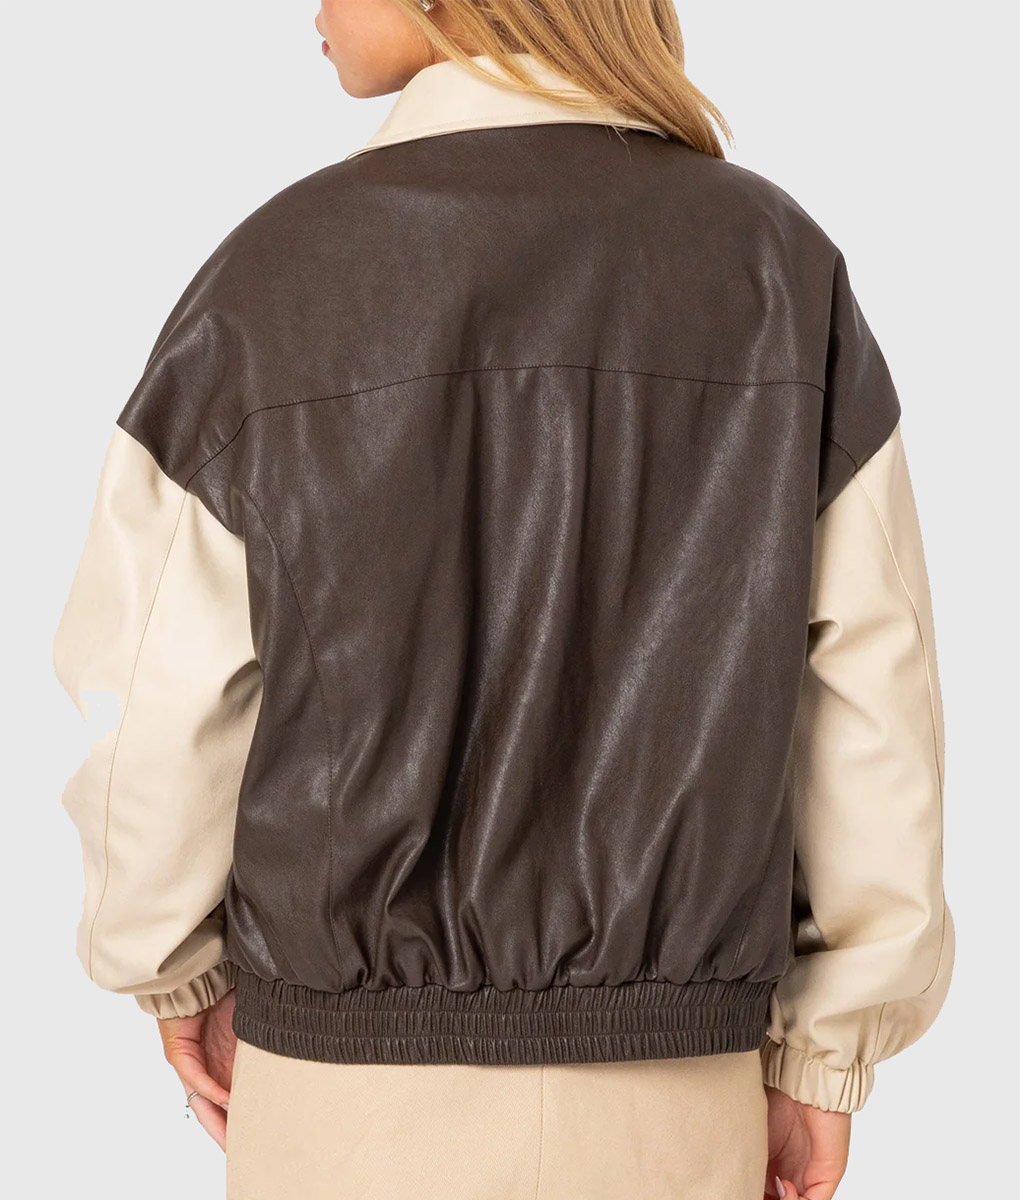 Emily Ratajkowski Shirt Style Bomber Jacket (2)